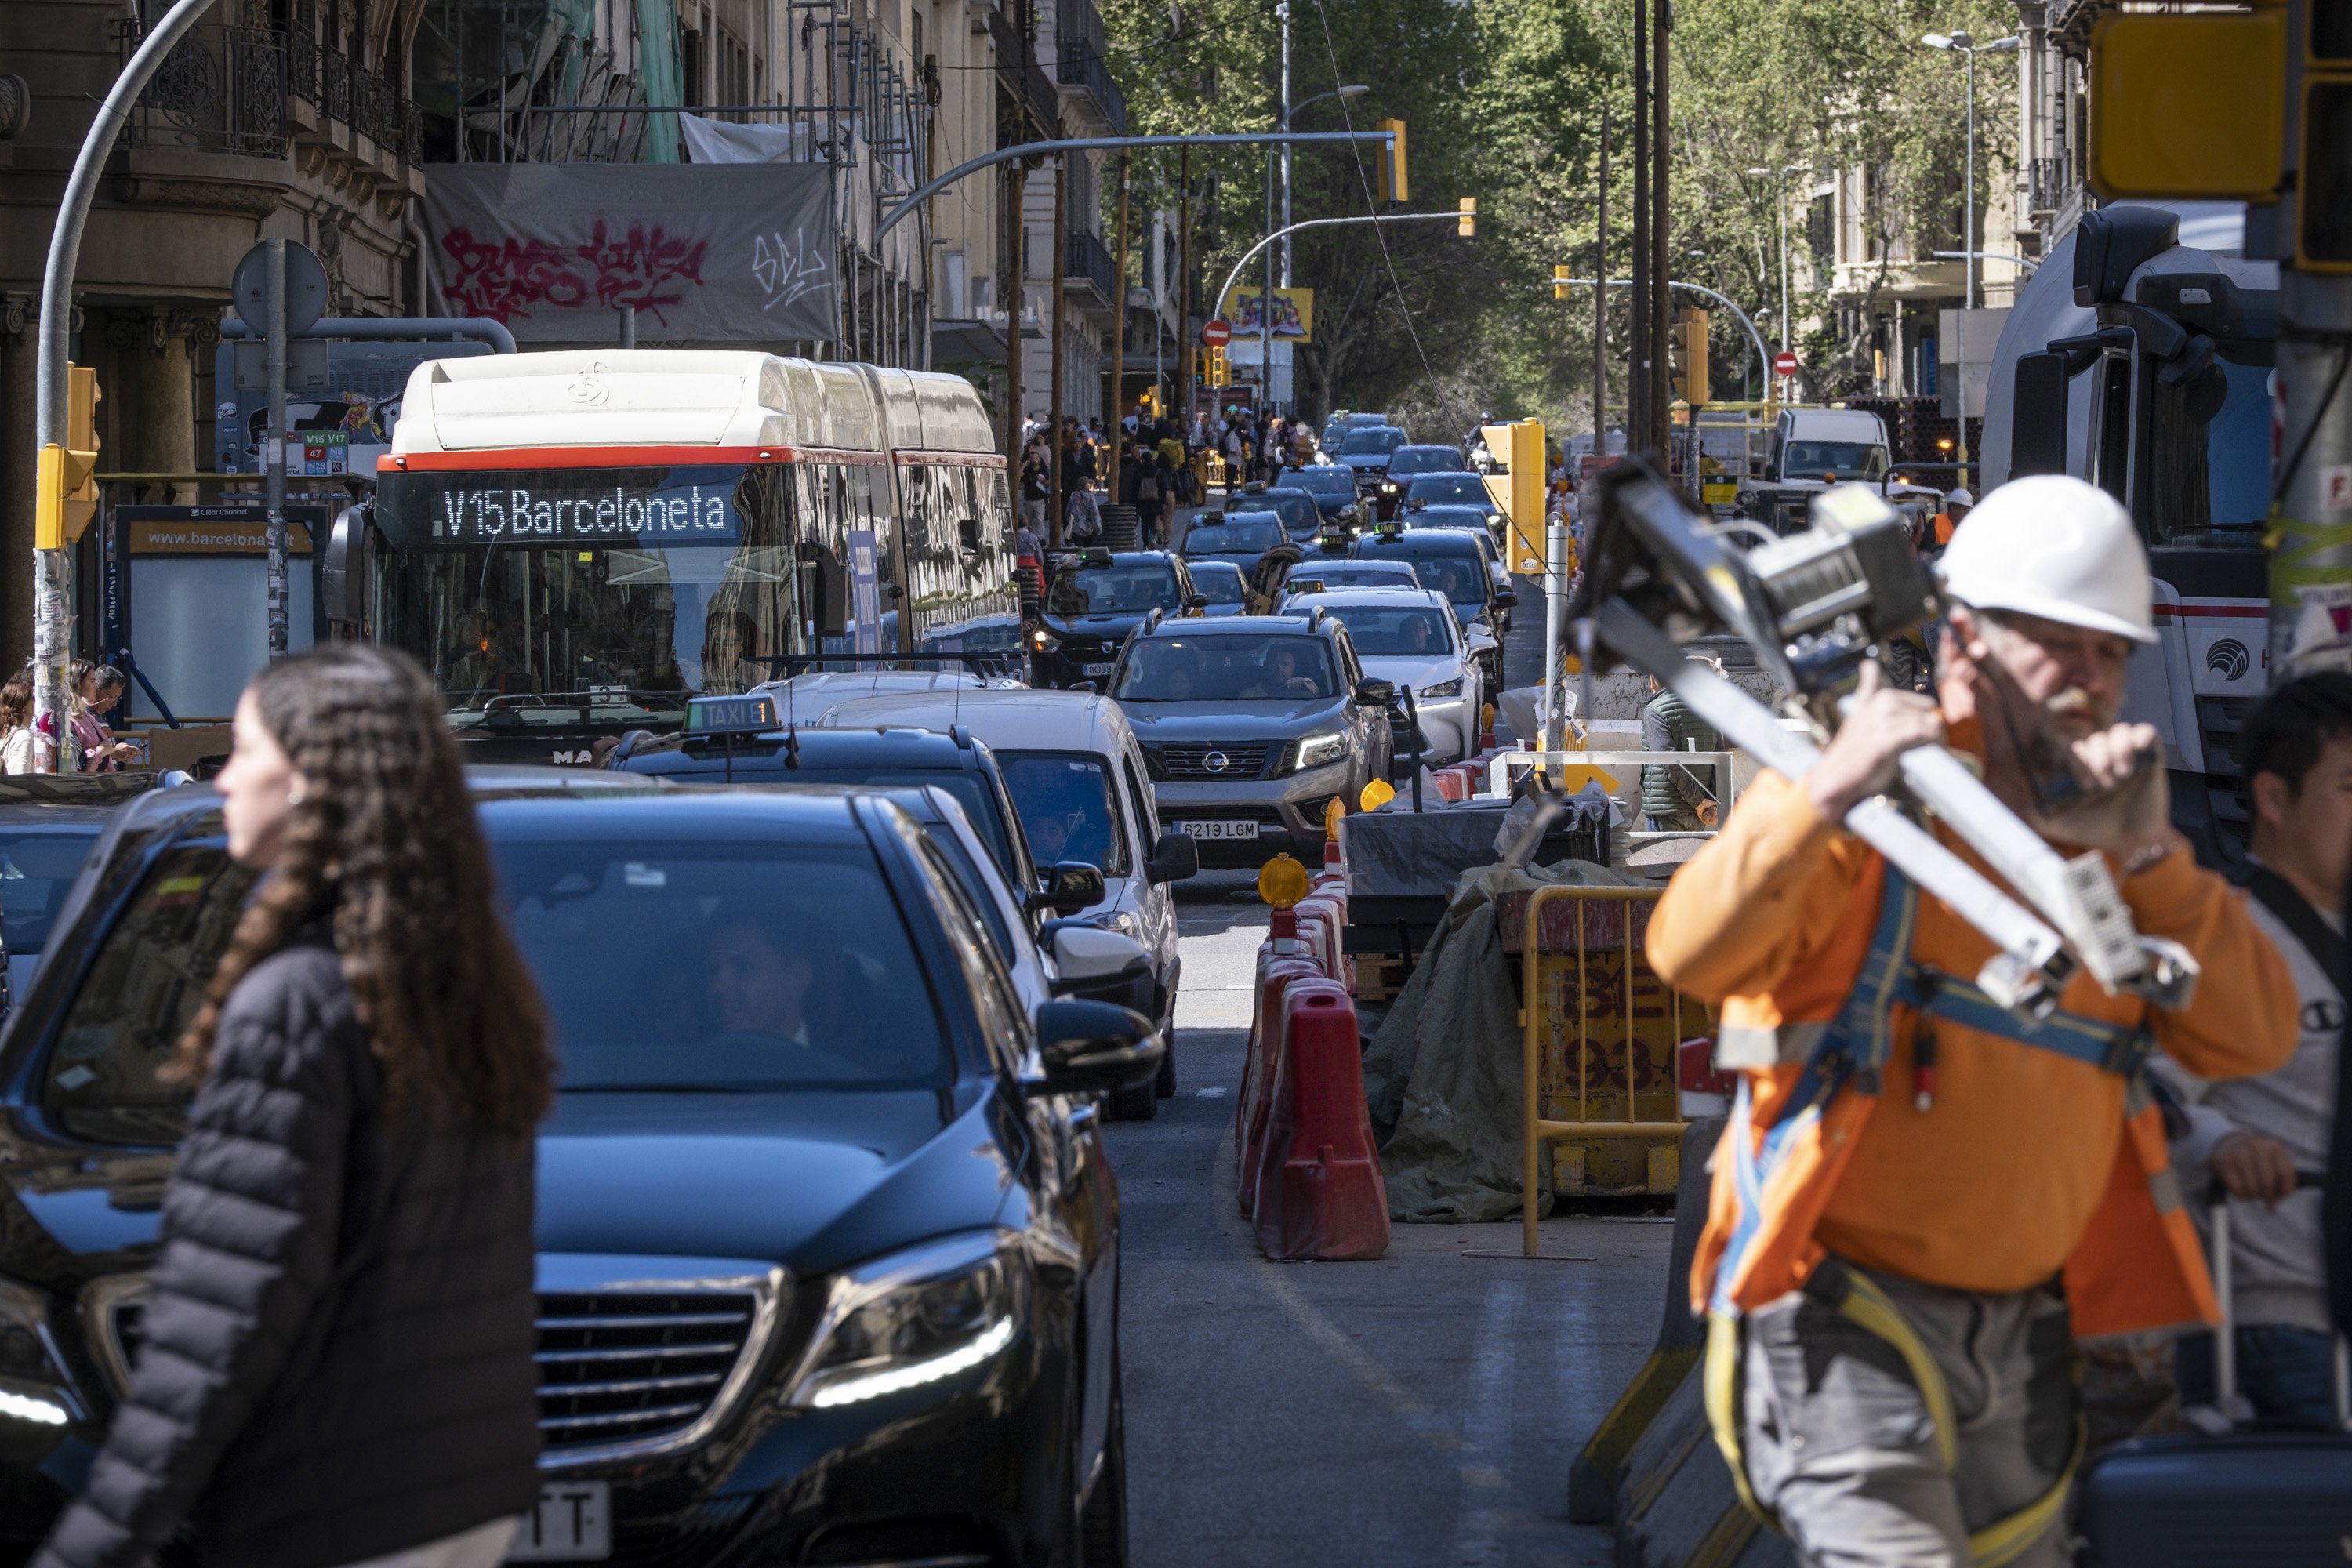 La transformació de la Via Laietana canvia de fase: arriben noves afectacions al trànsit